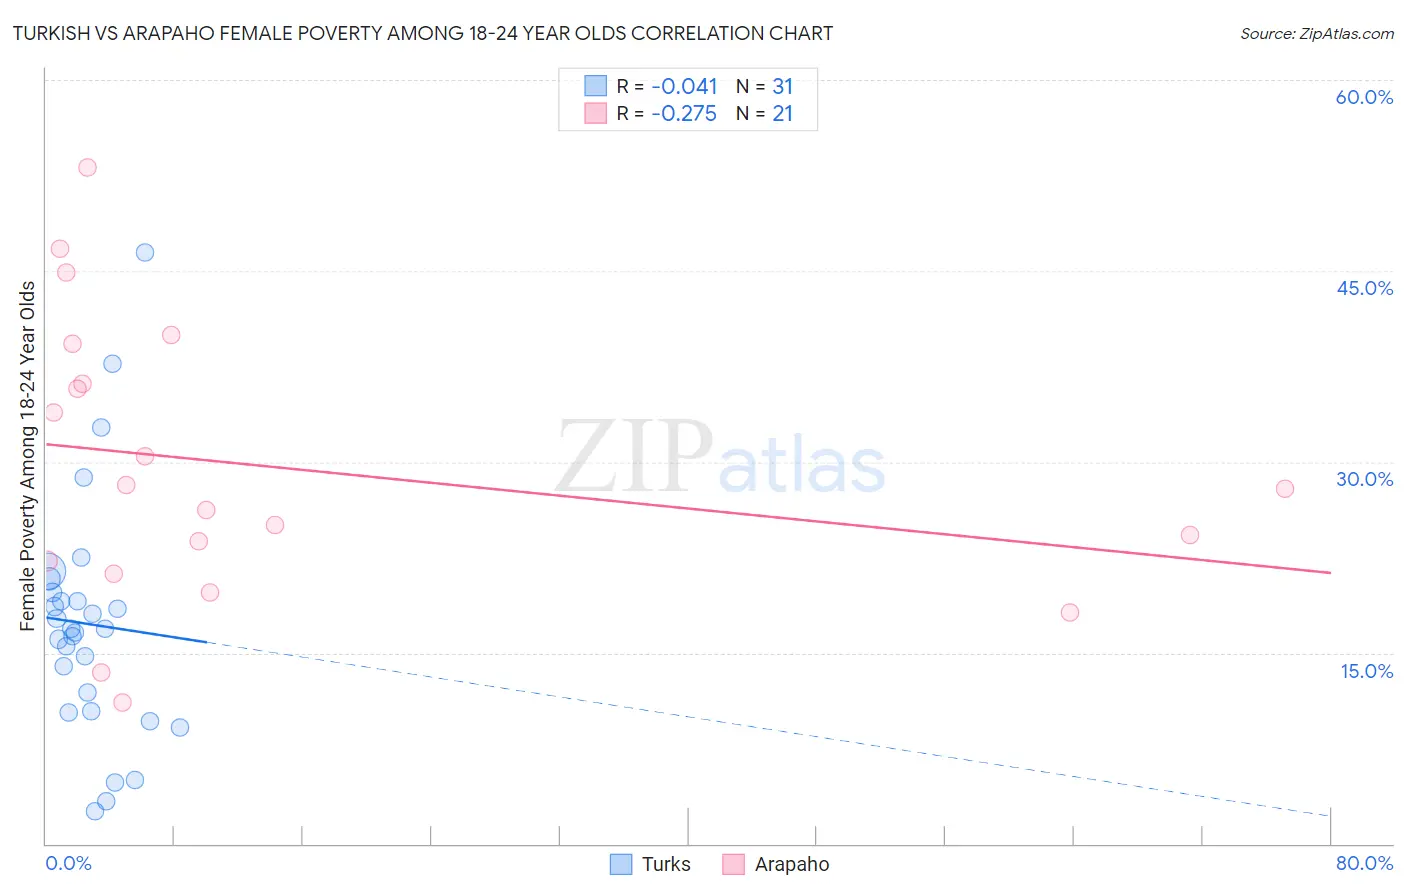 Turkish vs Arapaho Female Poverty Among 18-24 Year Olds